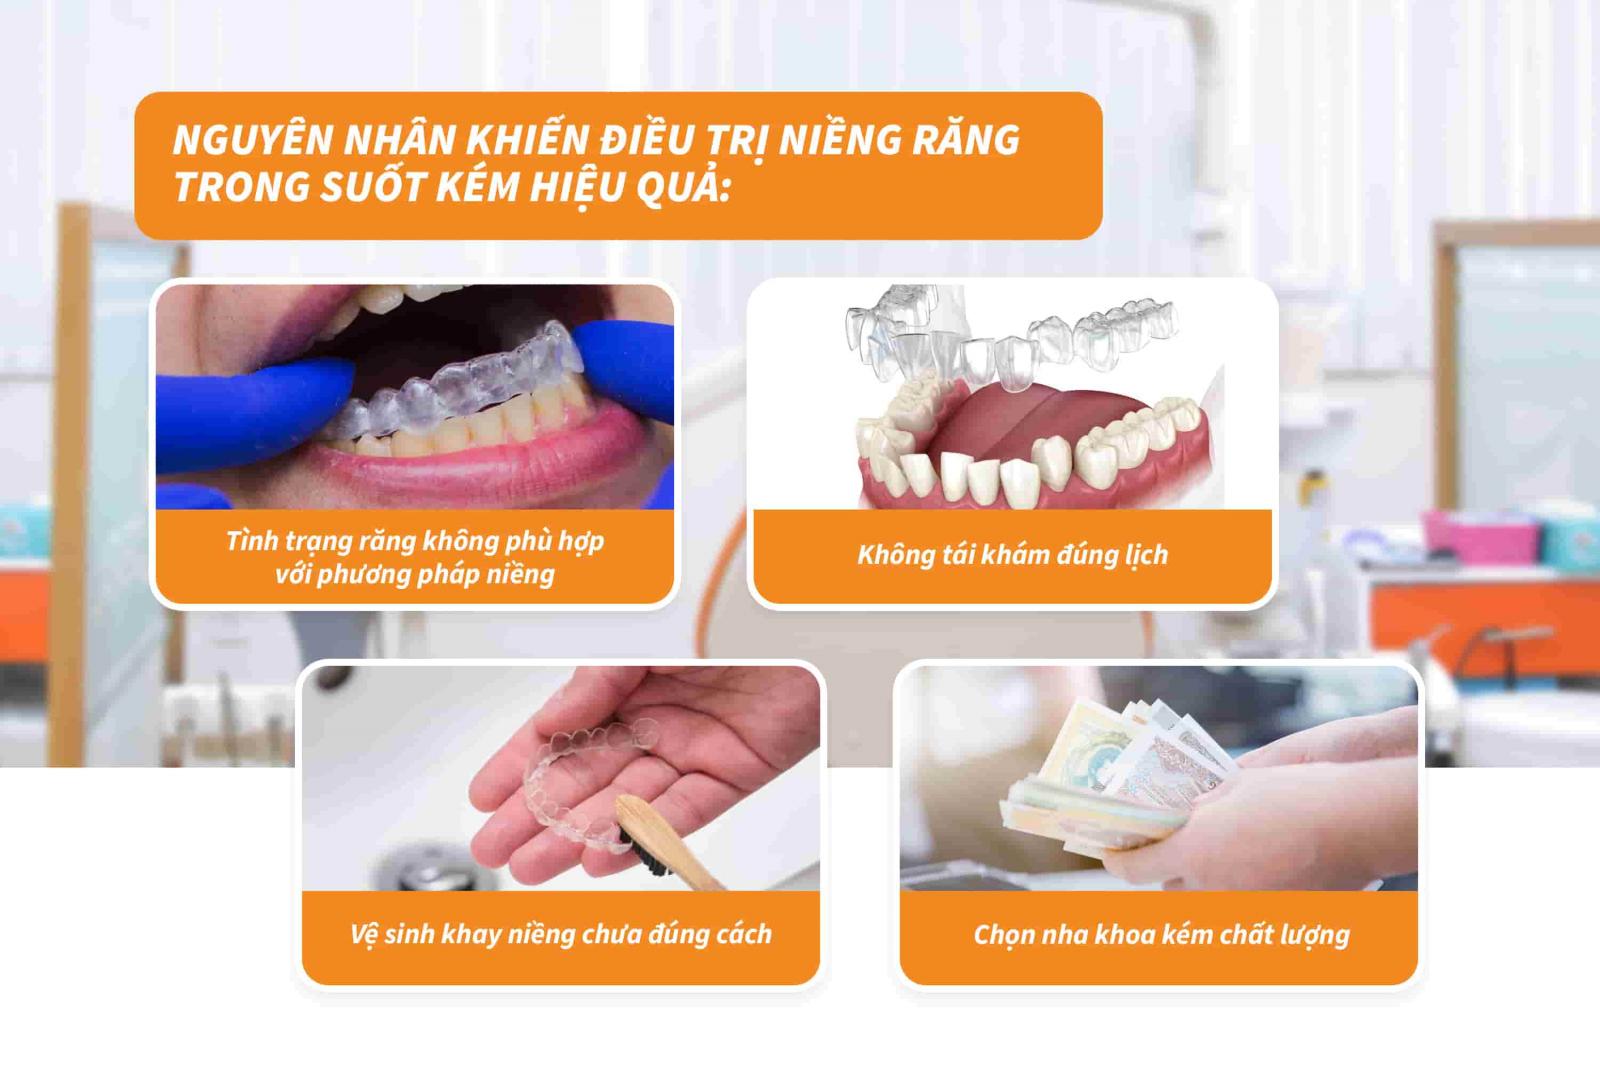 Nguyên nhân khiến điều trị niềng răng trong suốt kém hiệu quả